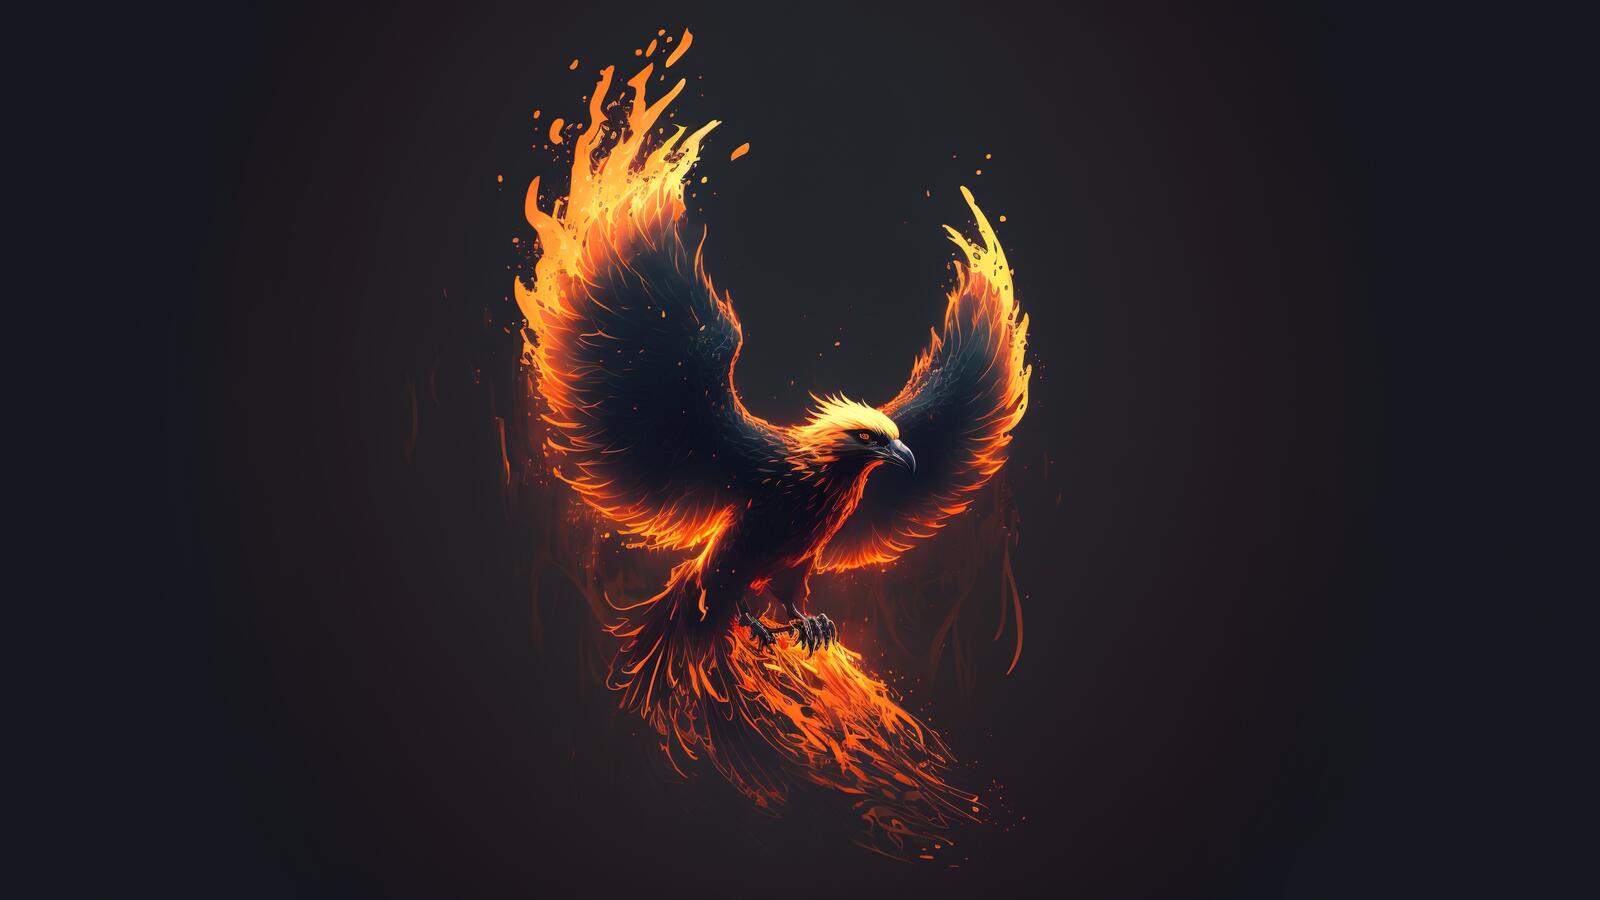 Бесплатное фото Фэнтезийная огненная птица с расправленными крыльями